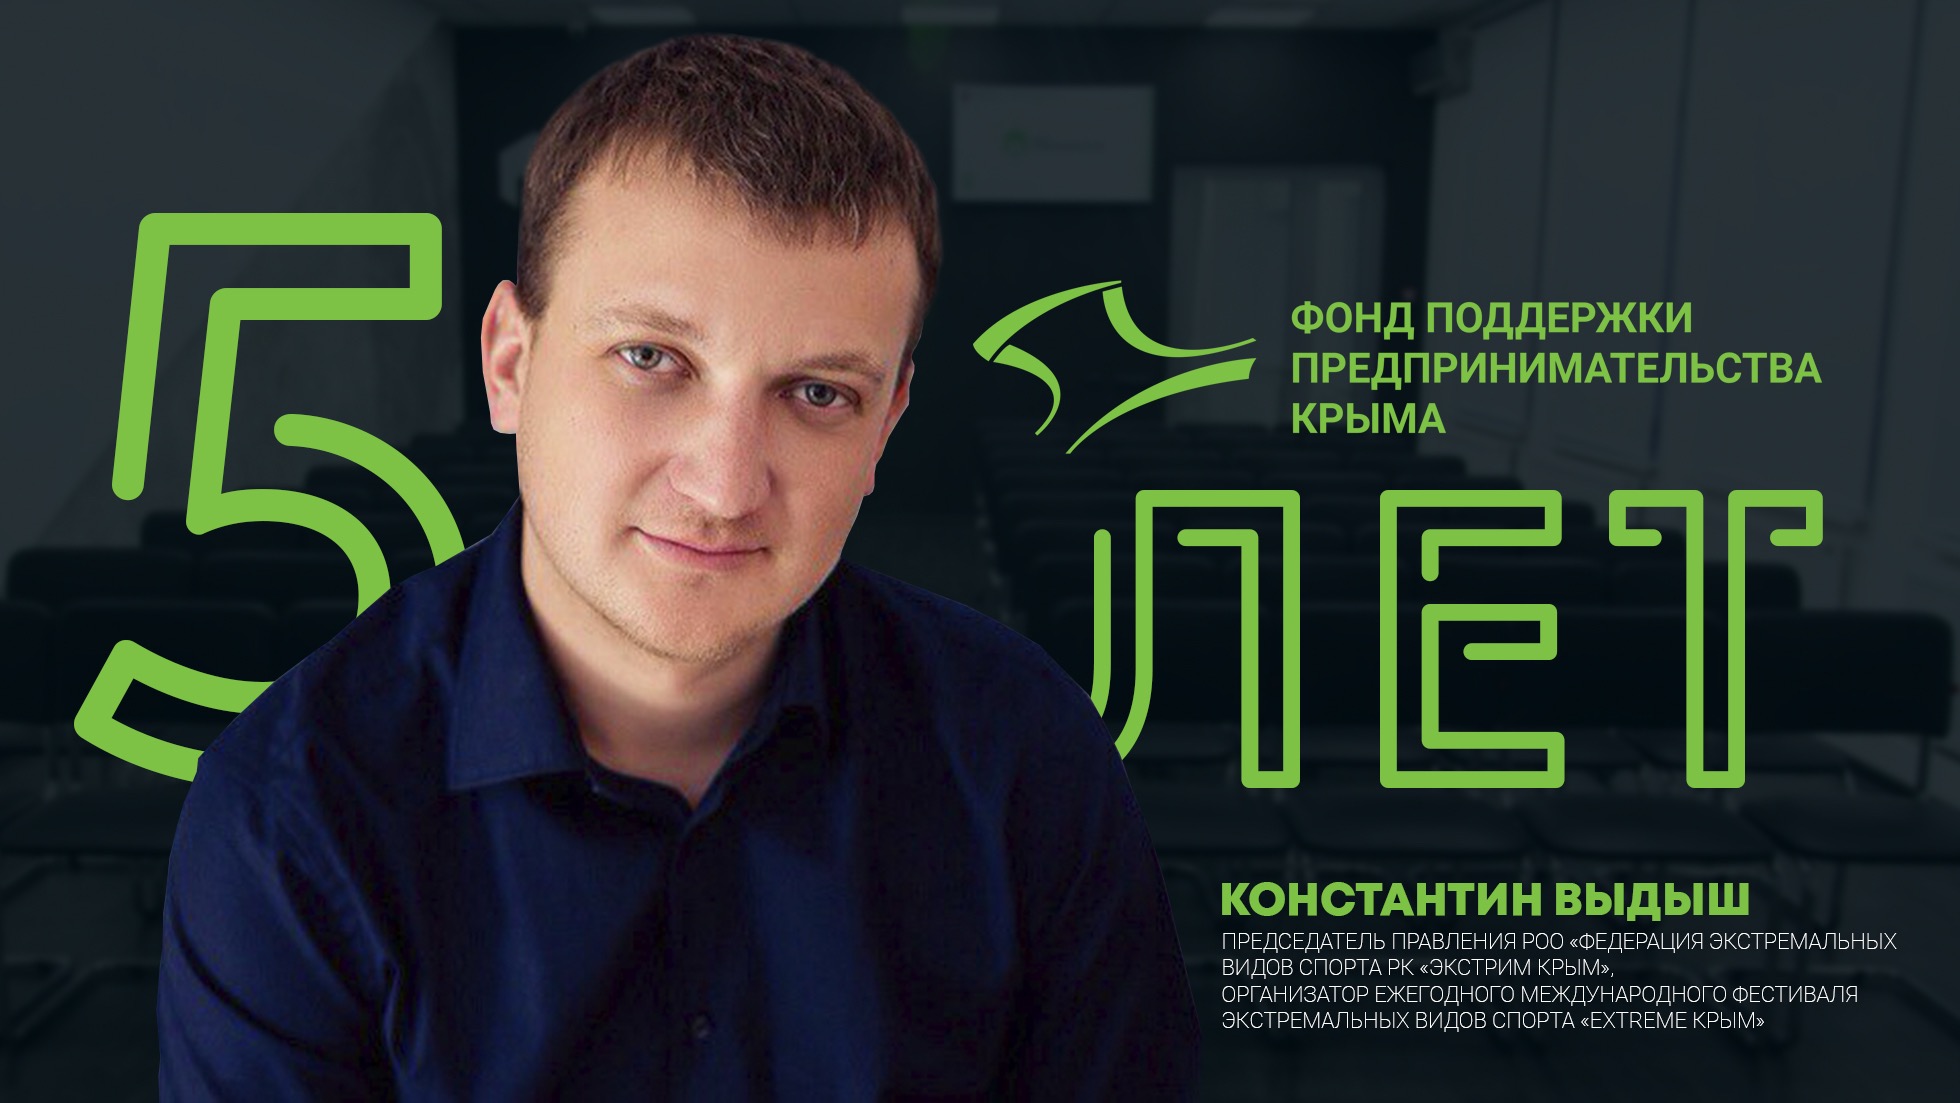 5 лет Фонду поддержки предпринимательства Крыма: Константин Выдыш